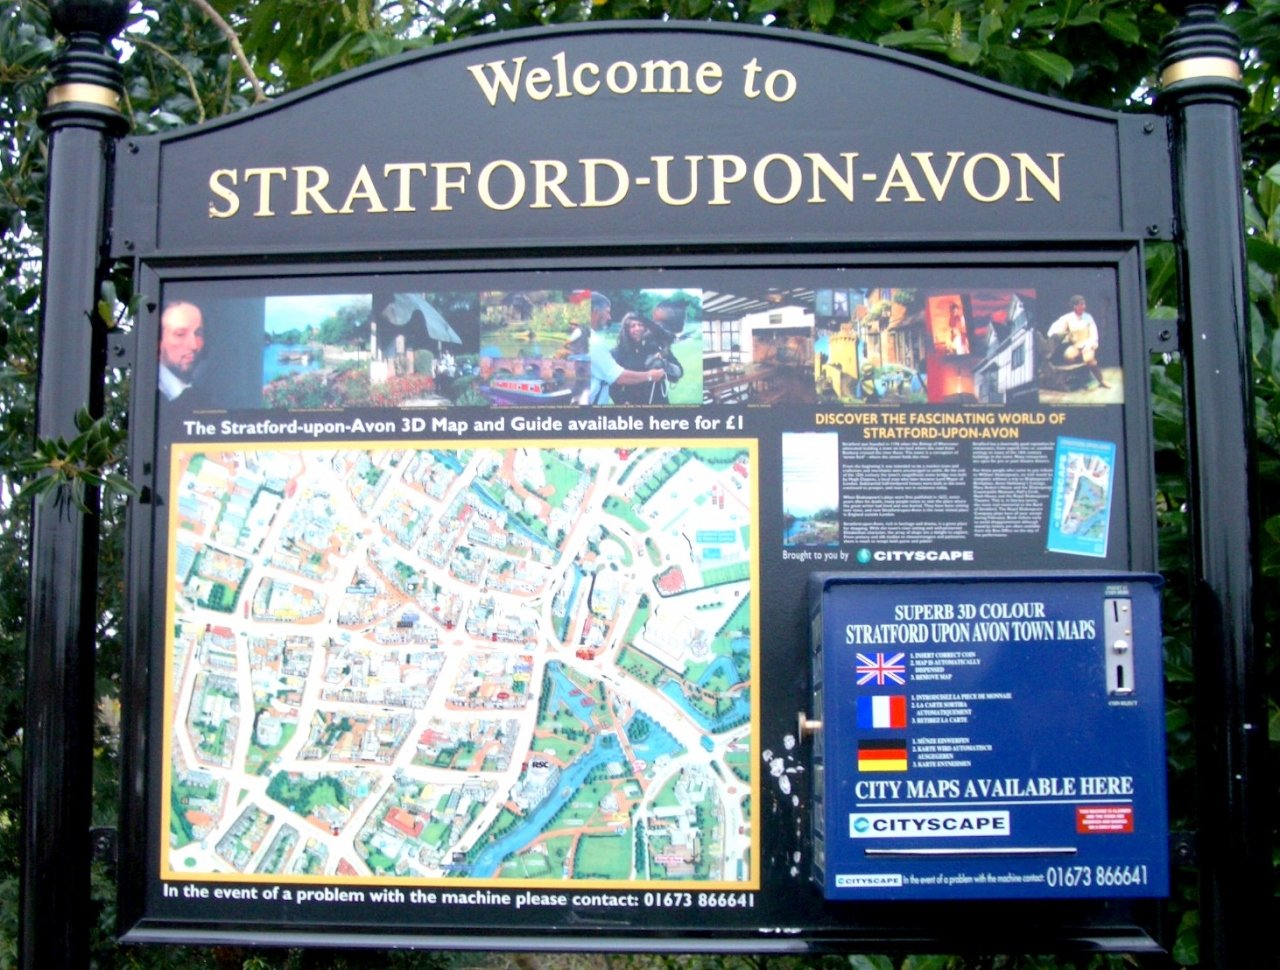 英国列車紀行 04 ストラトフォード アポン エイヴォン 謎多きシェイクスピアを訪ねて ストラトフォードアポンエイボン イギリス の旅行記 ブログ By Yquemさん フォートラベル